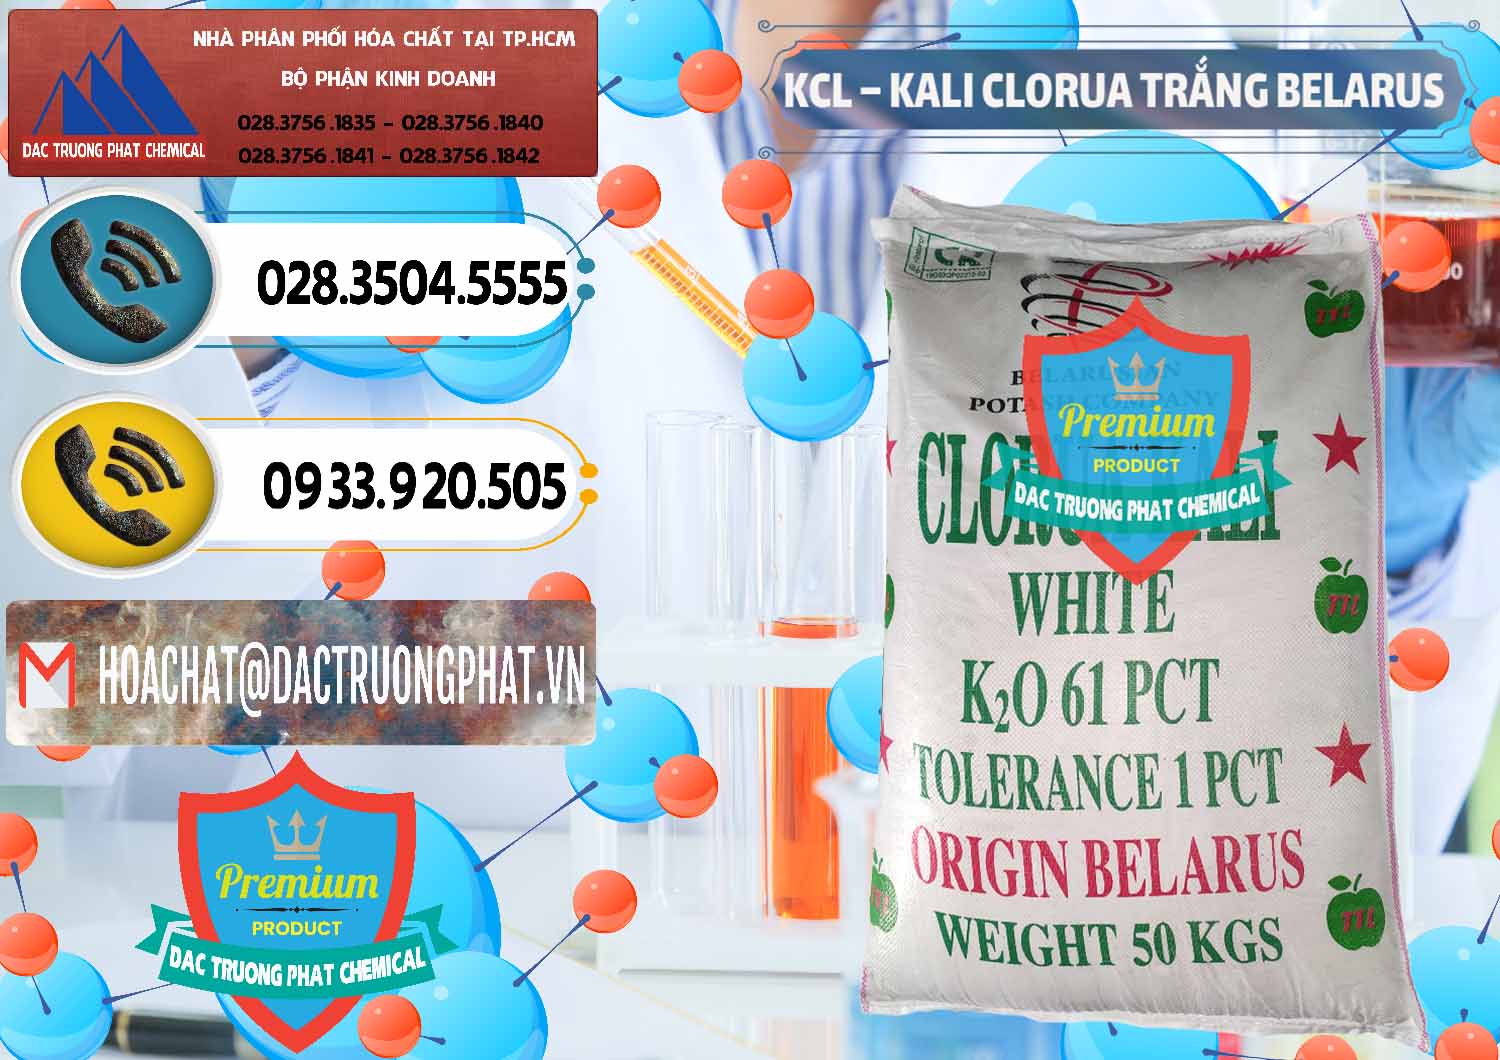 Nơi bán ( cung ứng ) KCL – Kali Clorua Trắng Belarus - 0085 - Chuyên bán & cung cấp hóa chất tại TP.HCM - hoachatdetnhuom.vn